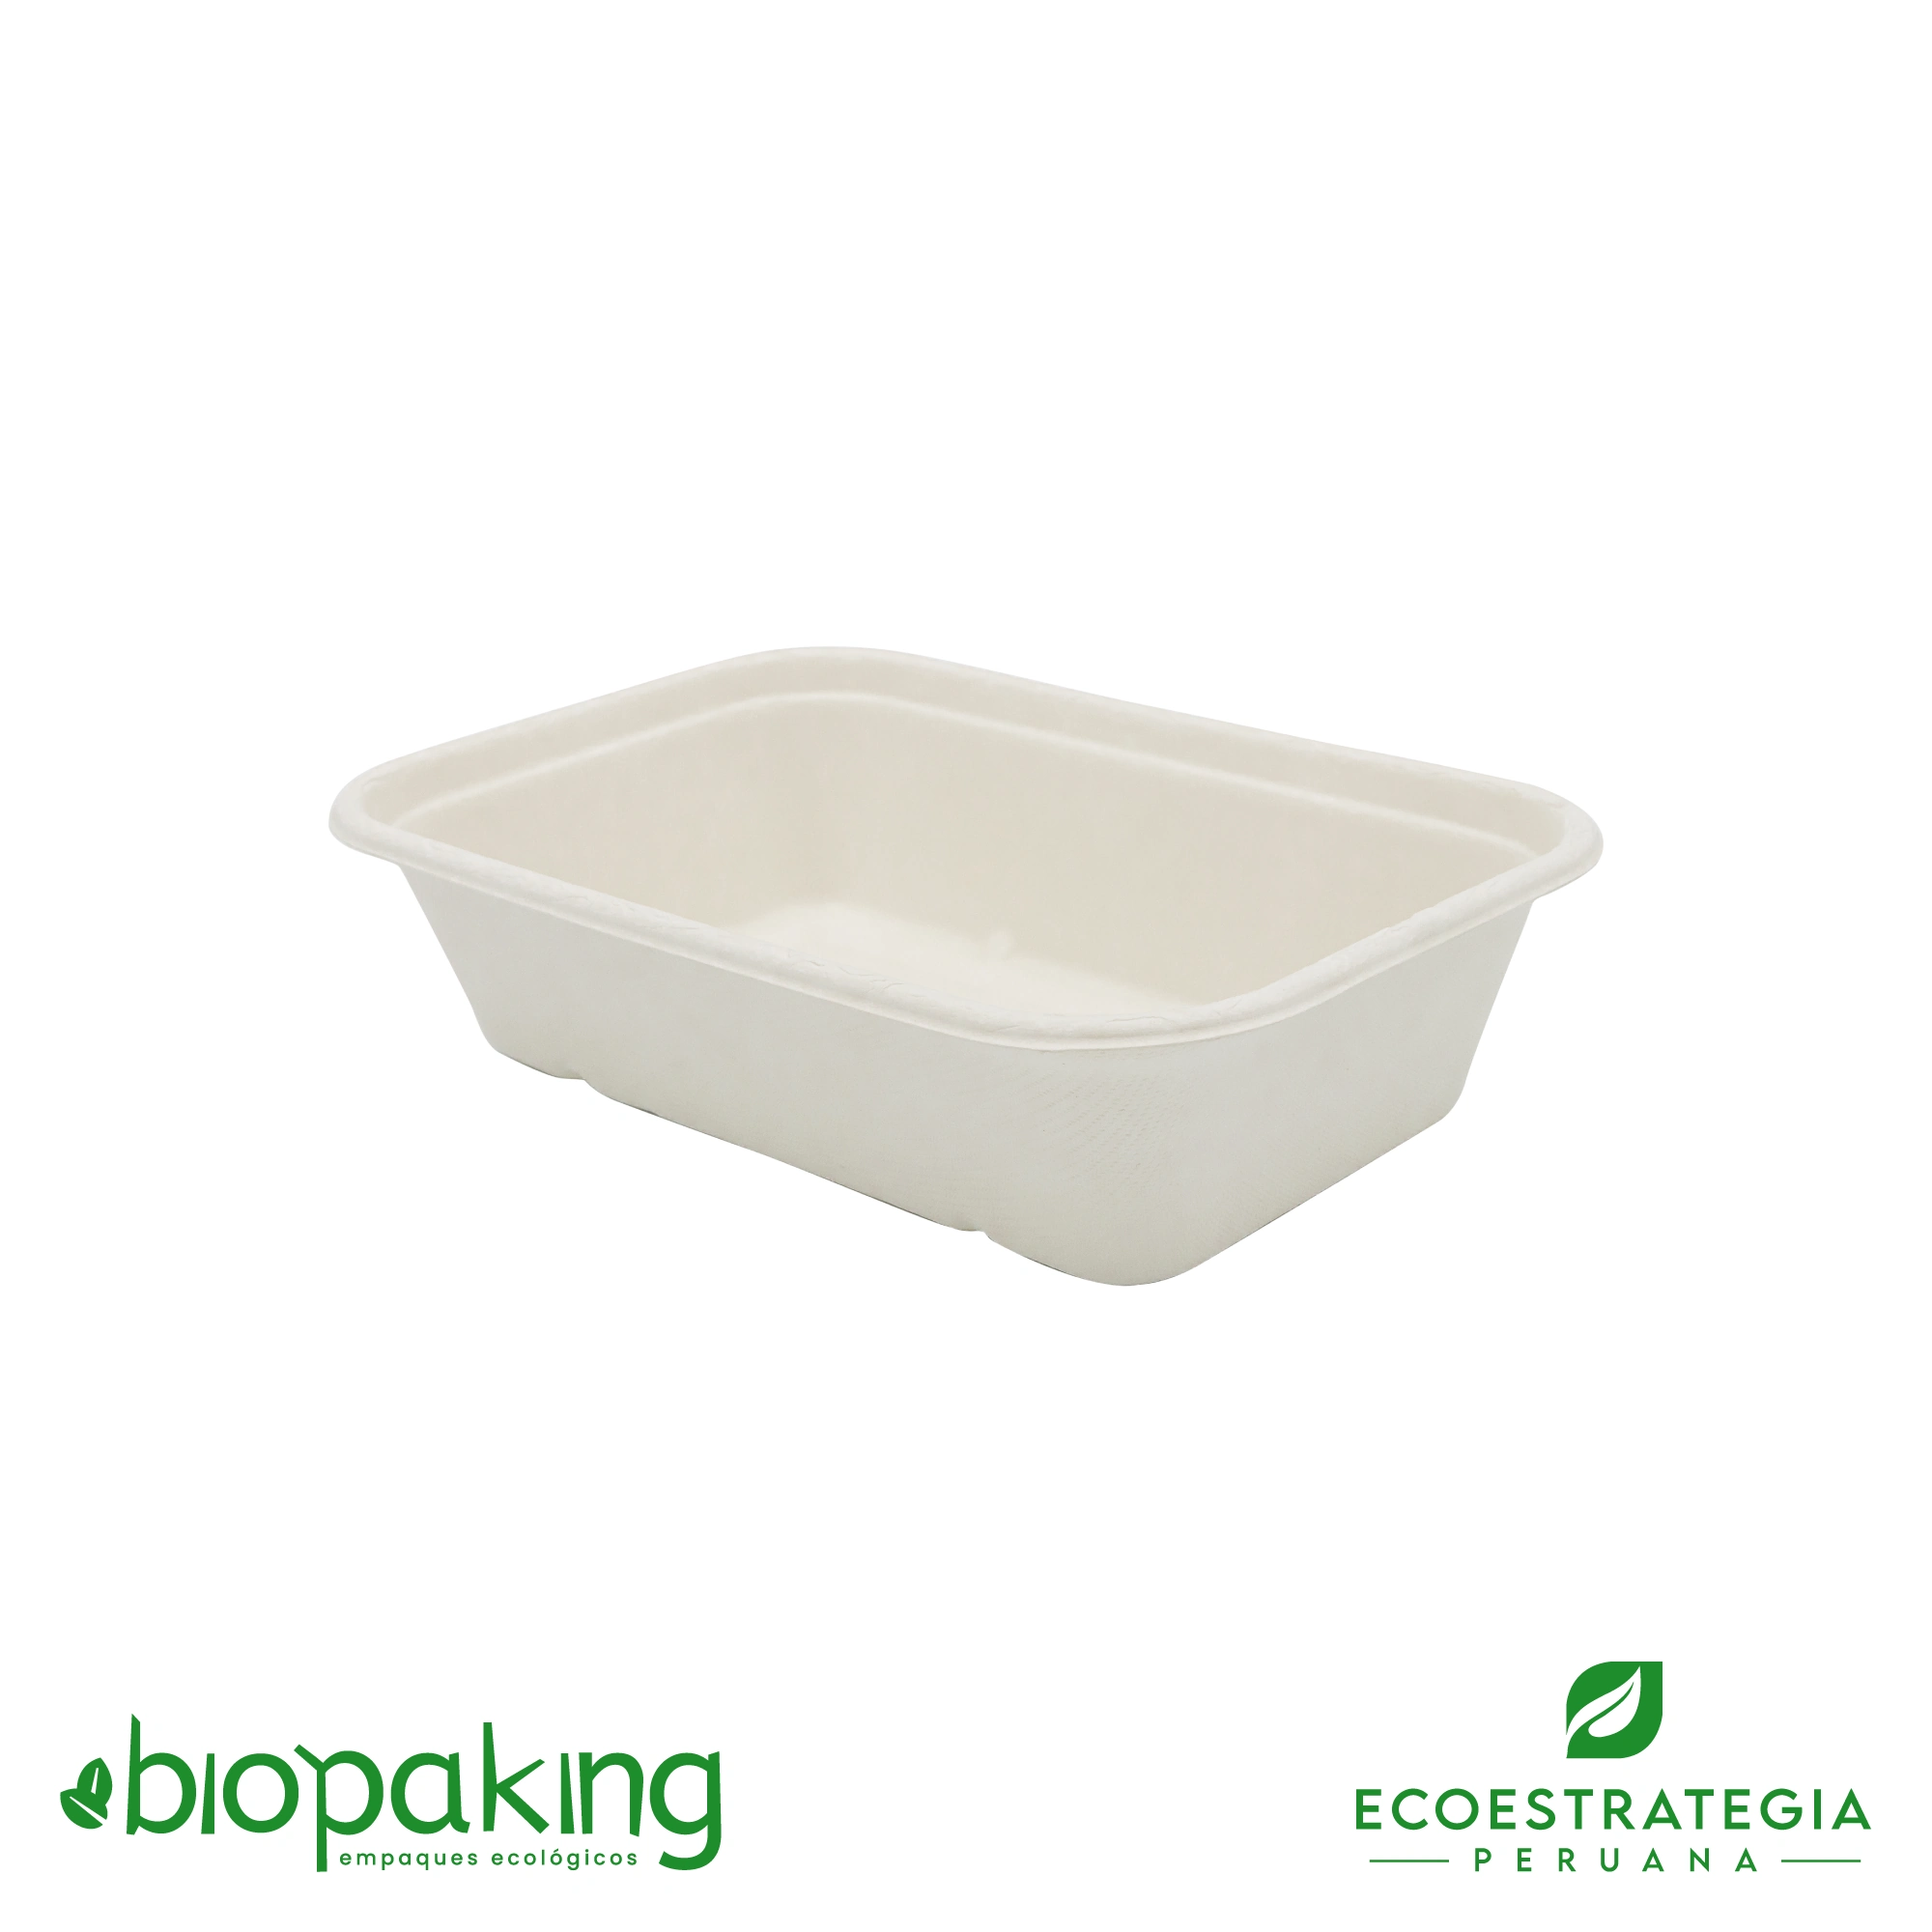 Esta bandeja biodegradable está hecho del bagazo de la caña de azúcar y pesa 32gr. Envases descartables con gramaje ideal, cotiza tus platos y tapers ecológicos